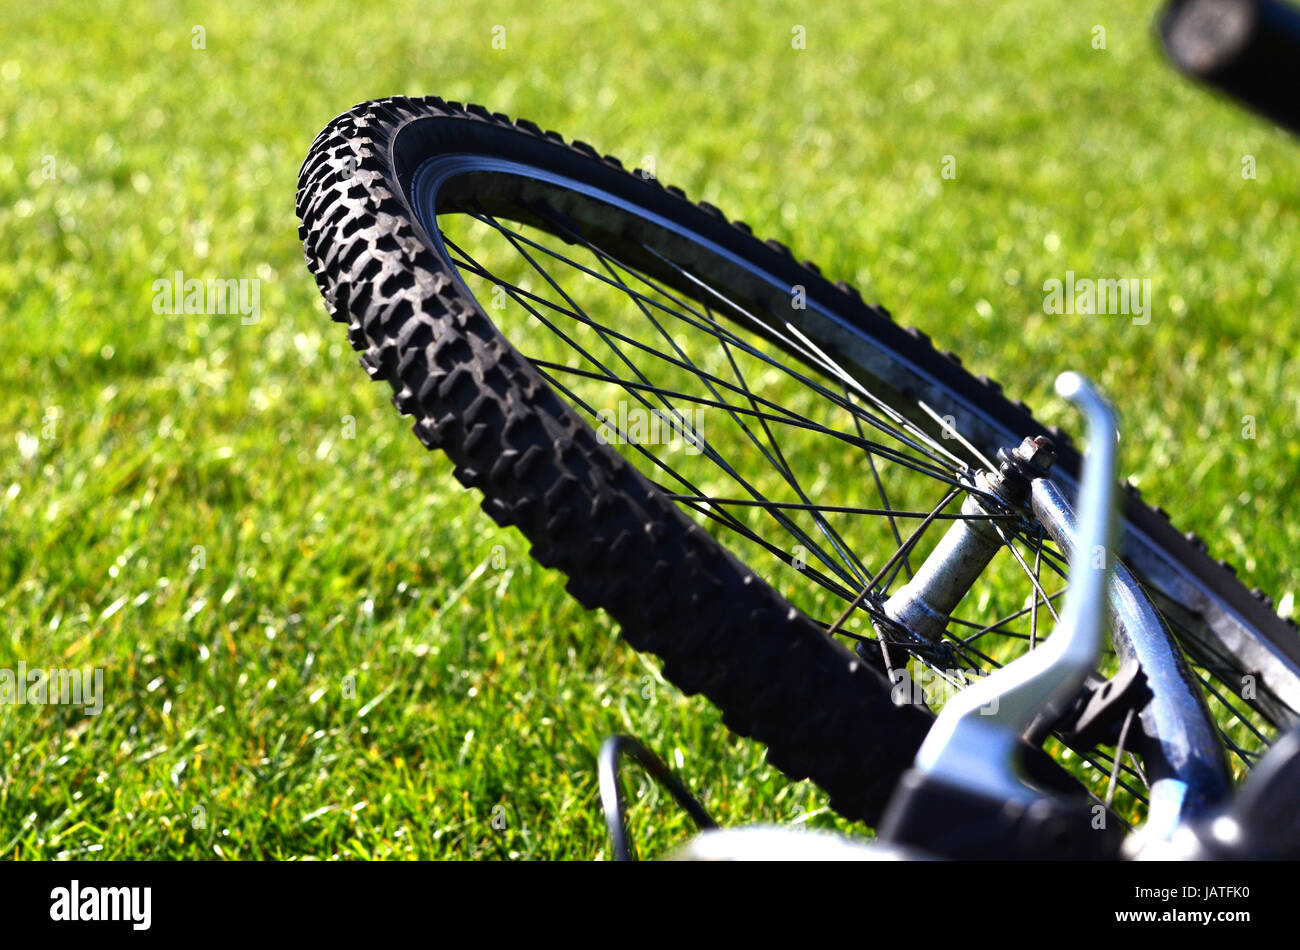 Cerca de una rueda de bicicleta que contrastan con la hierba Foto de stock